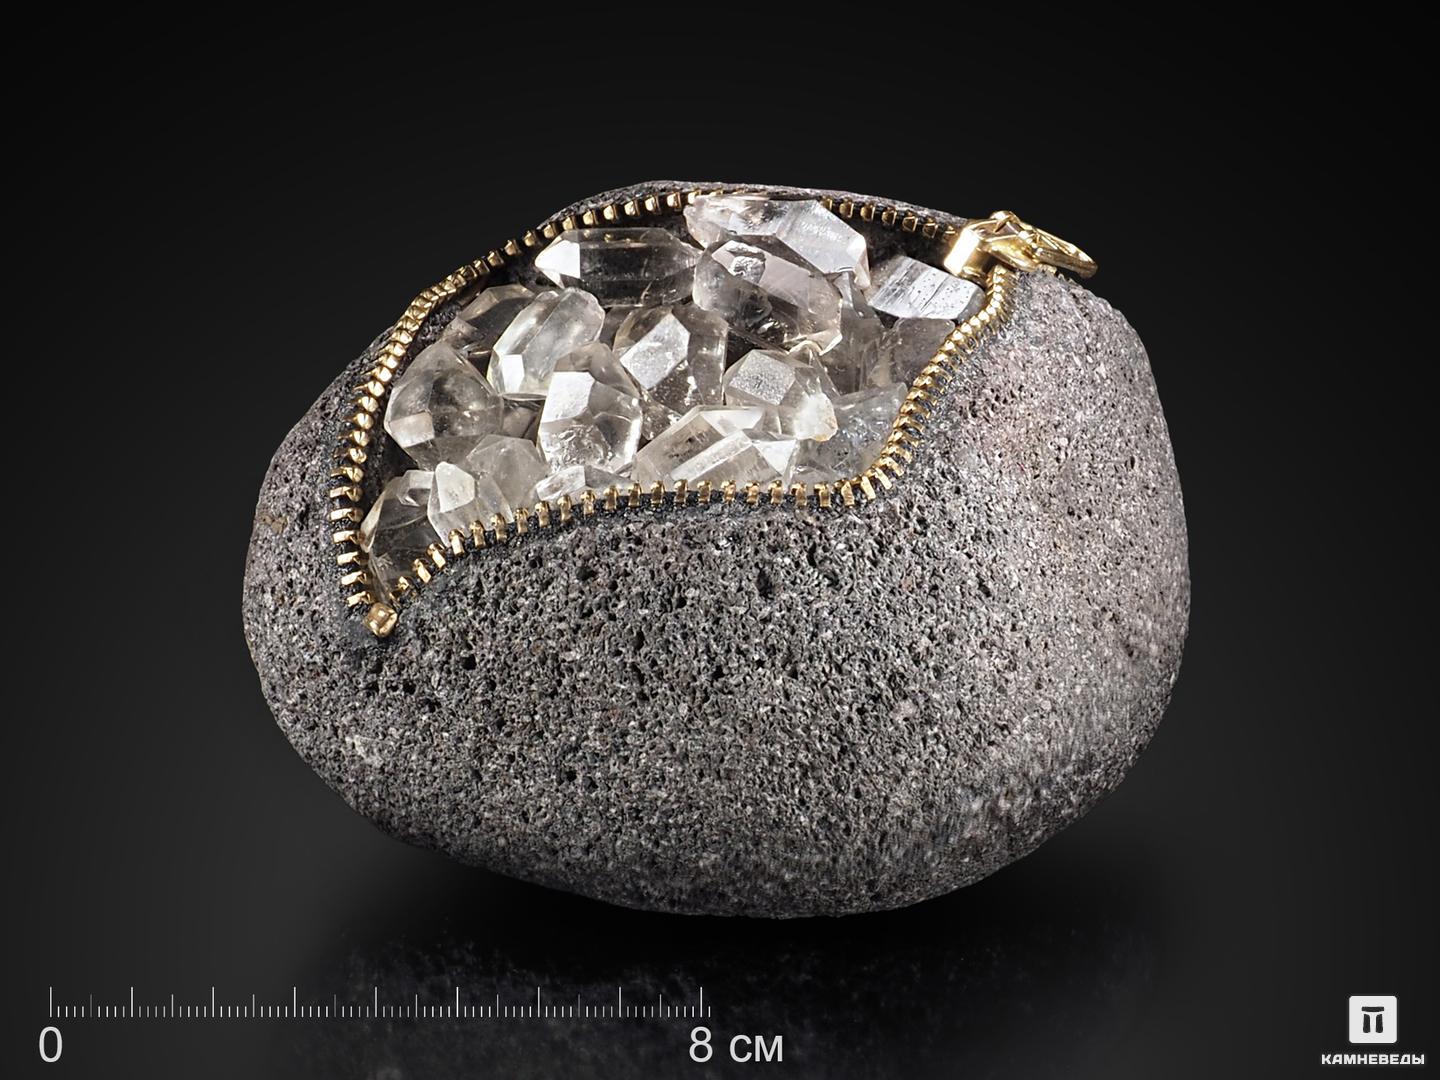 Сувенир из камня «кошелёк» с «херкимерским алмазом» (кристаллами горного хрусталя), 11,7х10,4х6,8 см